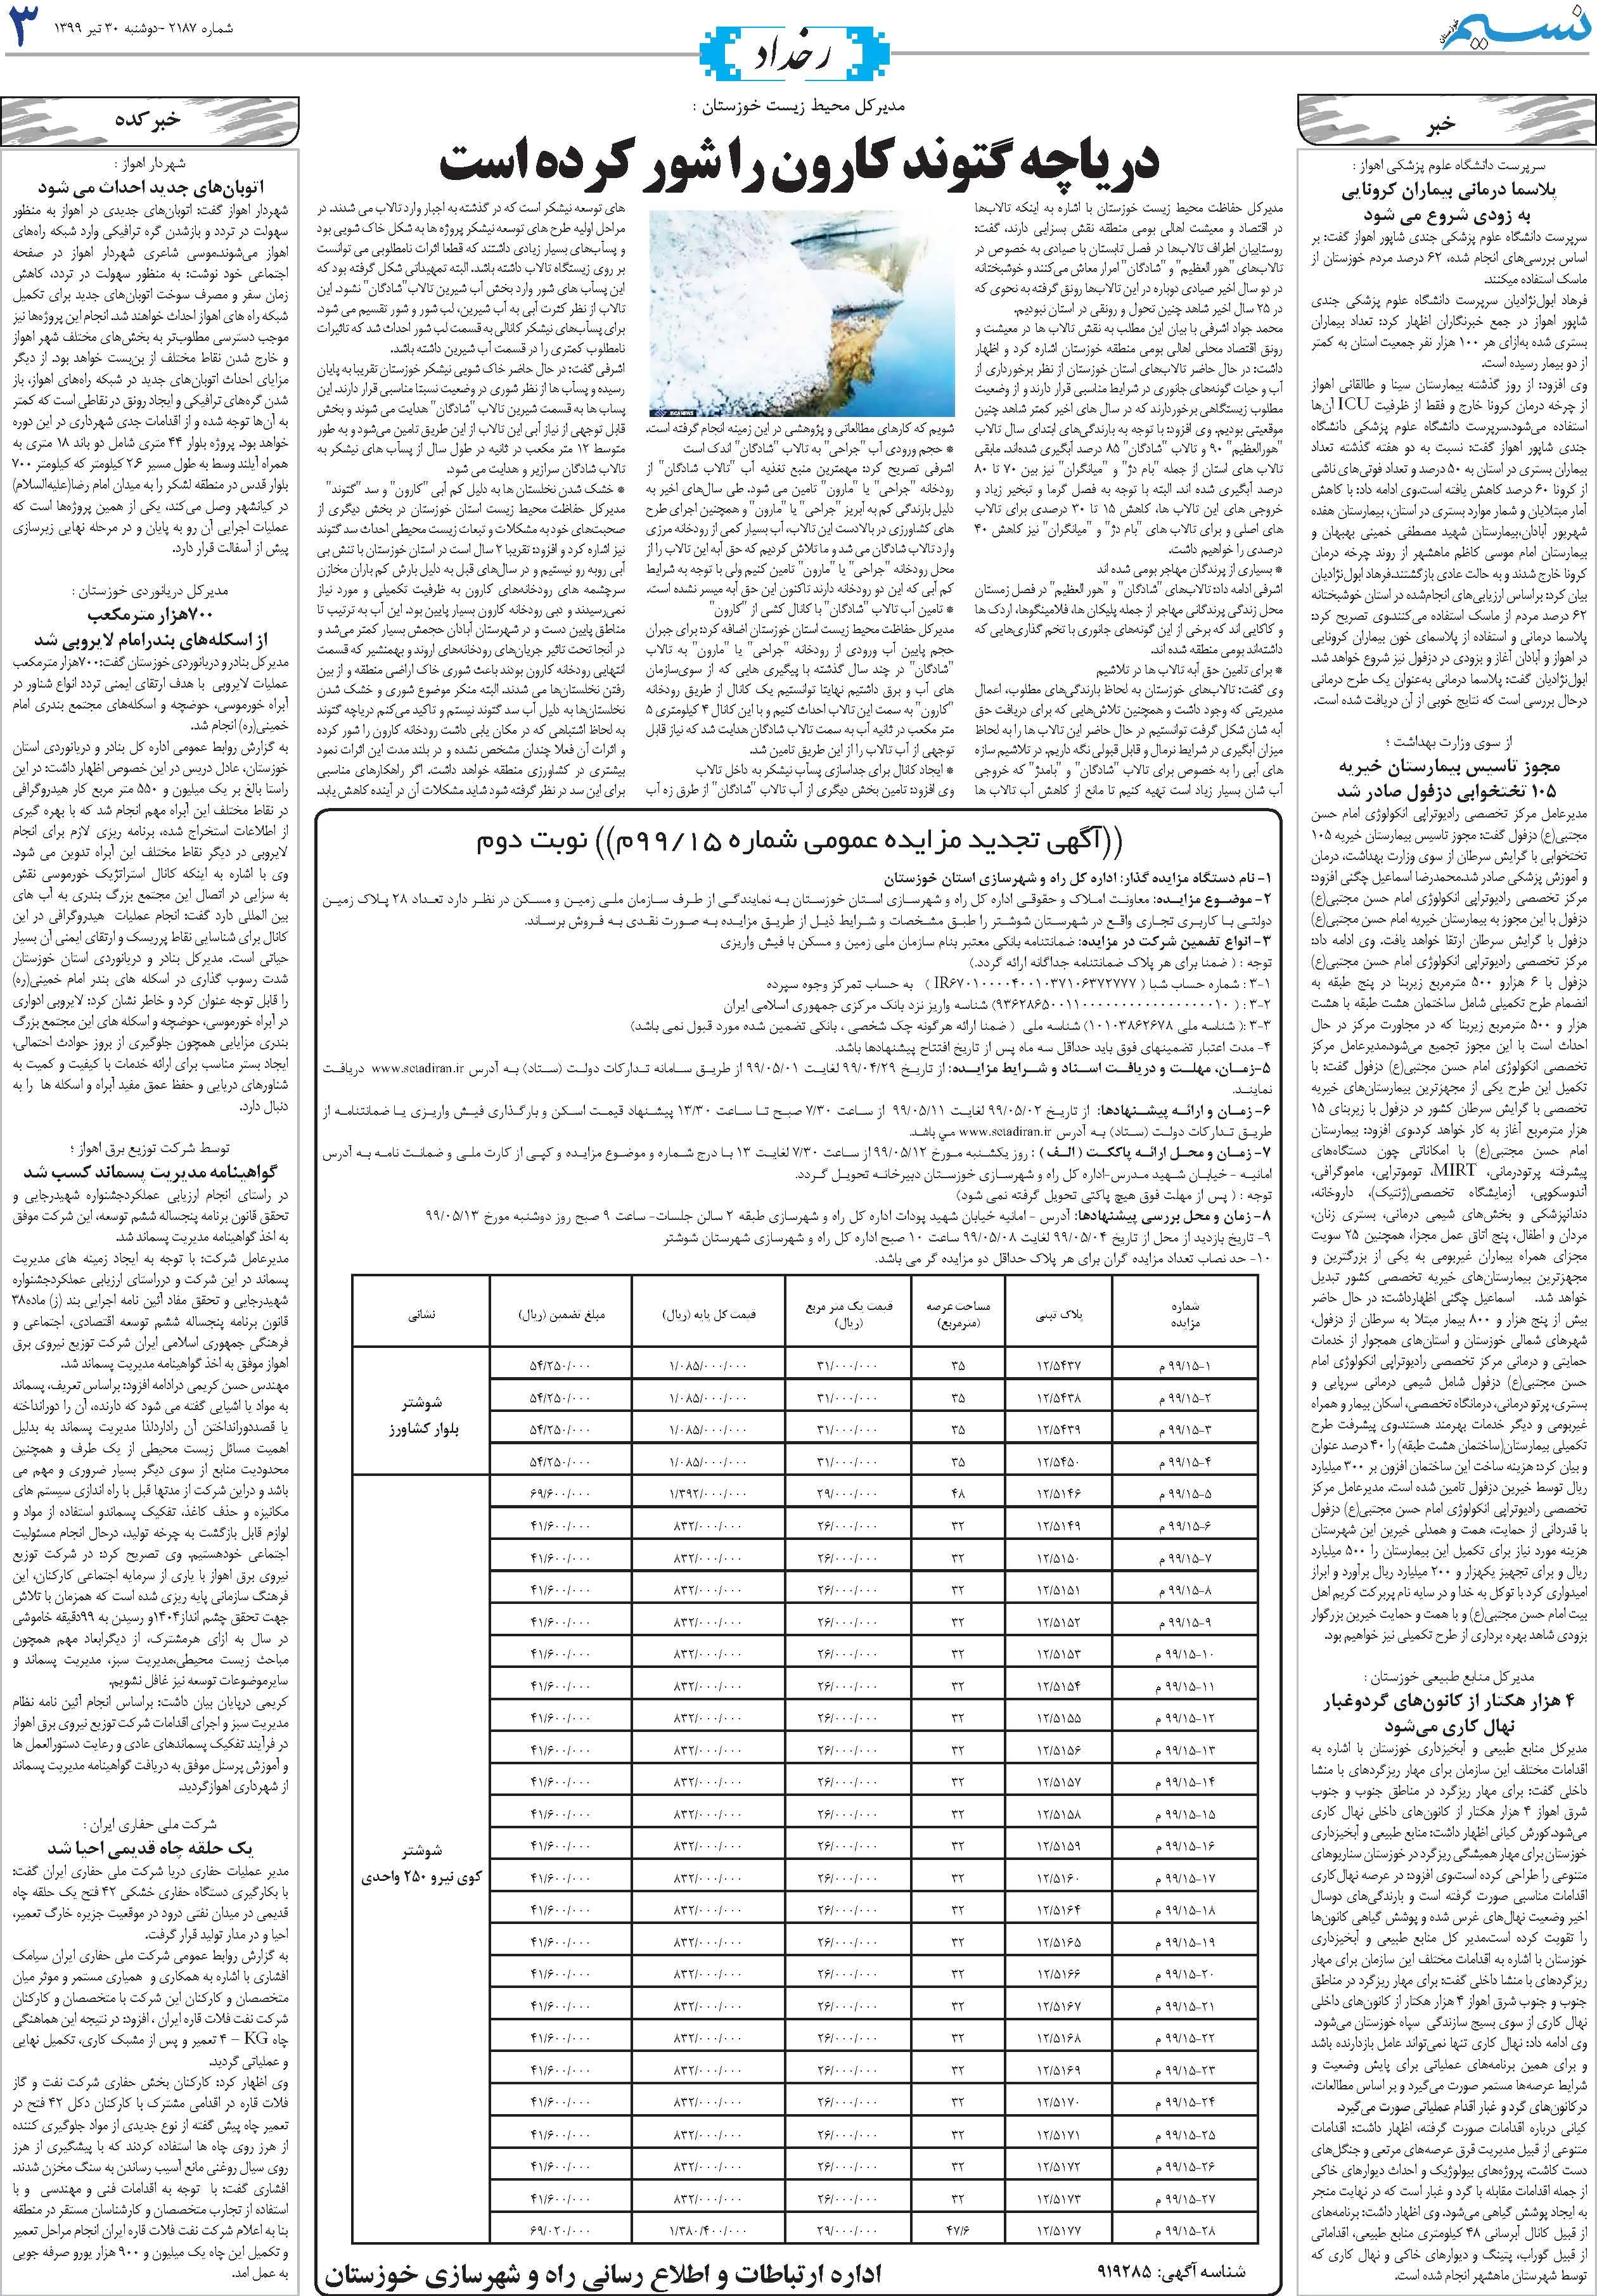 صفحه رخداد روزنامه نسیم شماره 2187